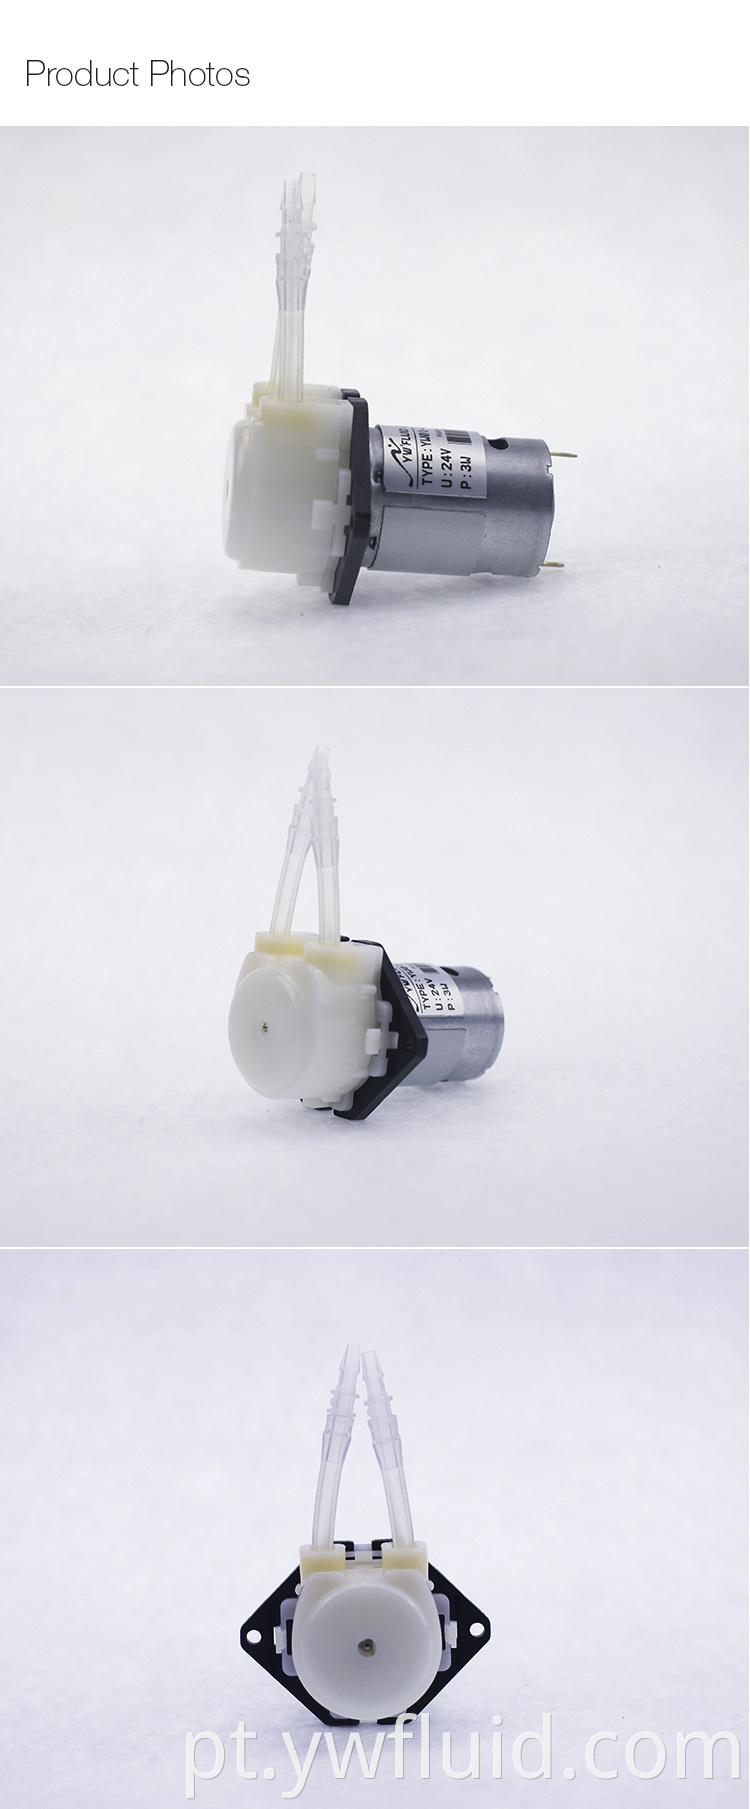 YWfluid Mini bomba d'água 24 V elétrica de baixa pressão de alta qualidade